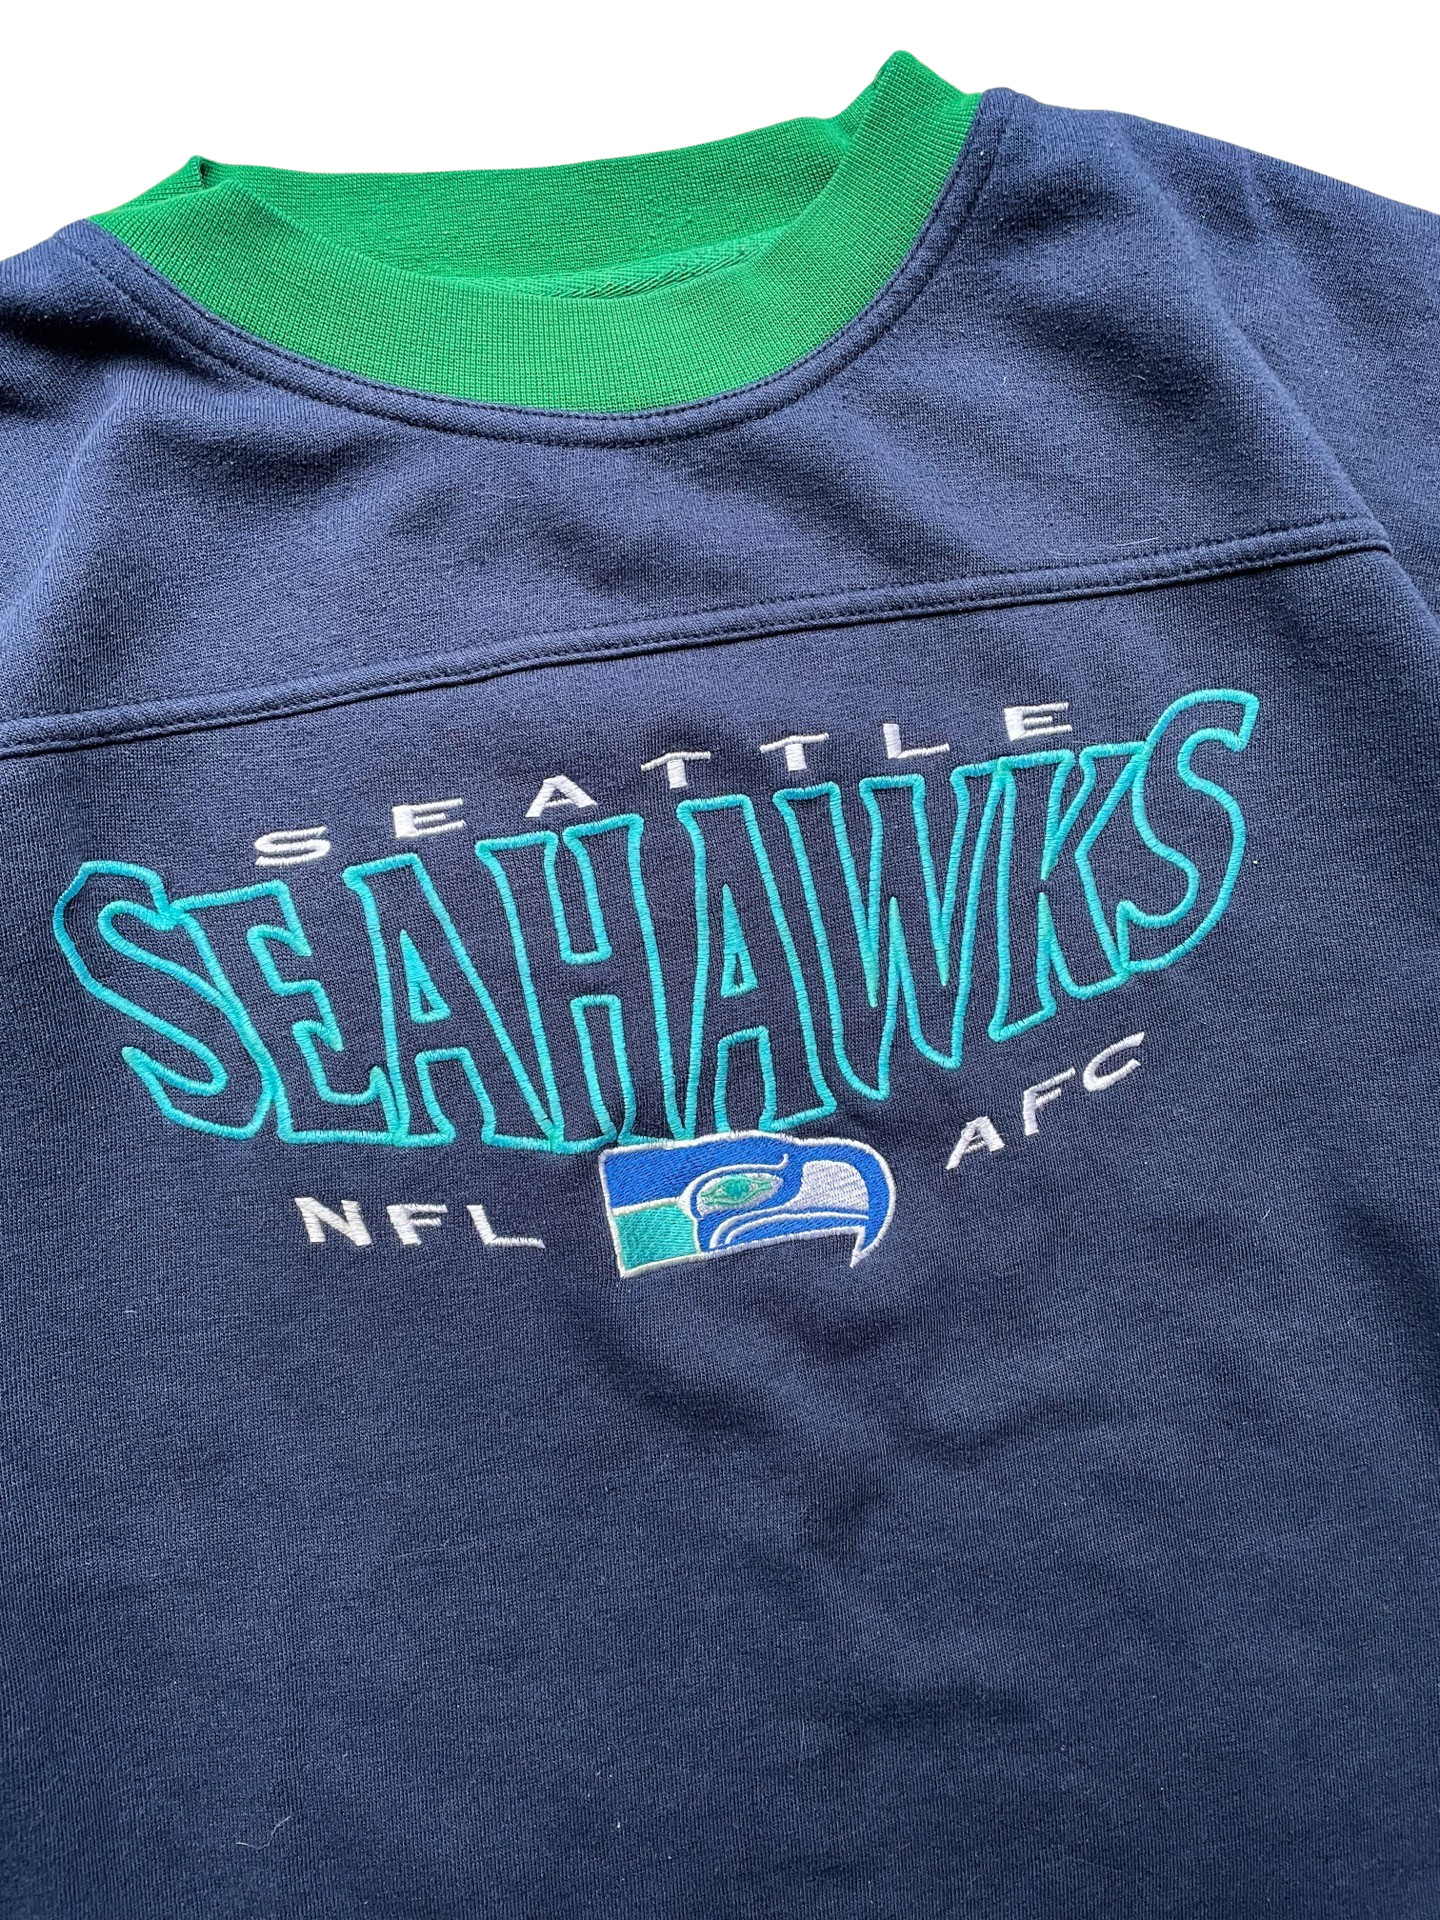 Vintage Seattle Seahawks Sweatshirt